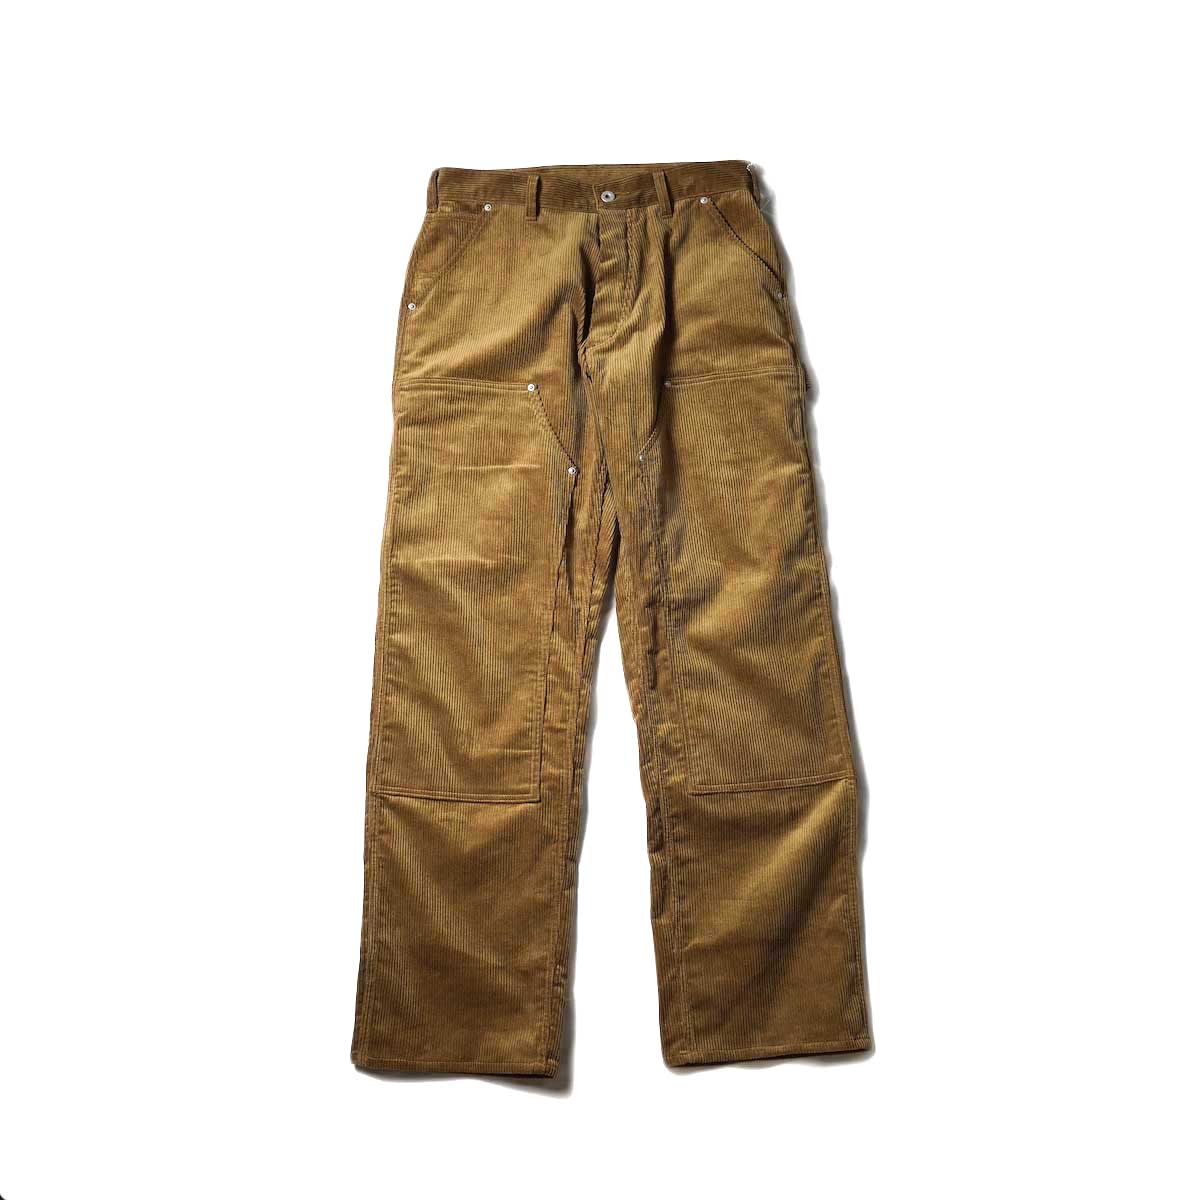 Willow Pants / P-013 Car Pants (Khaki Corduroy)